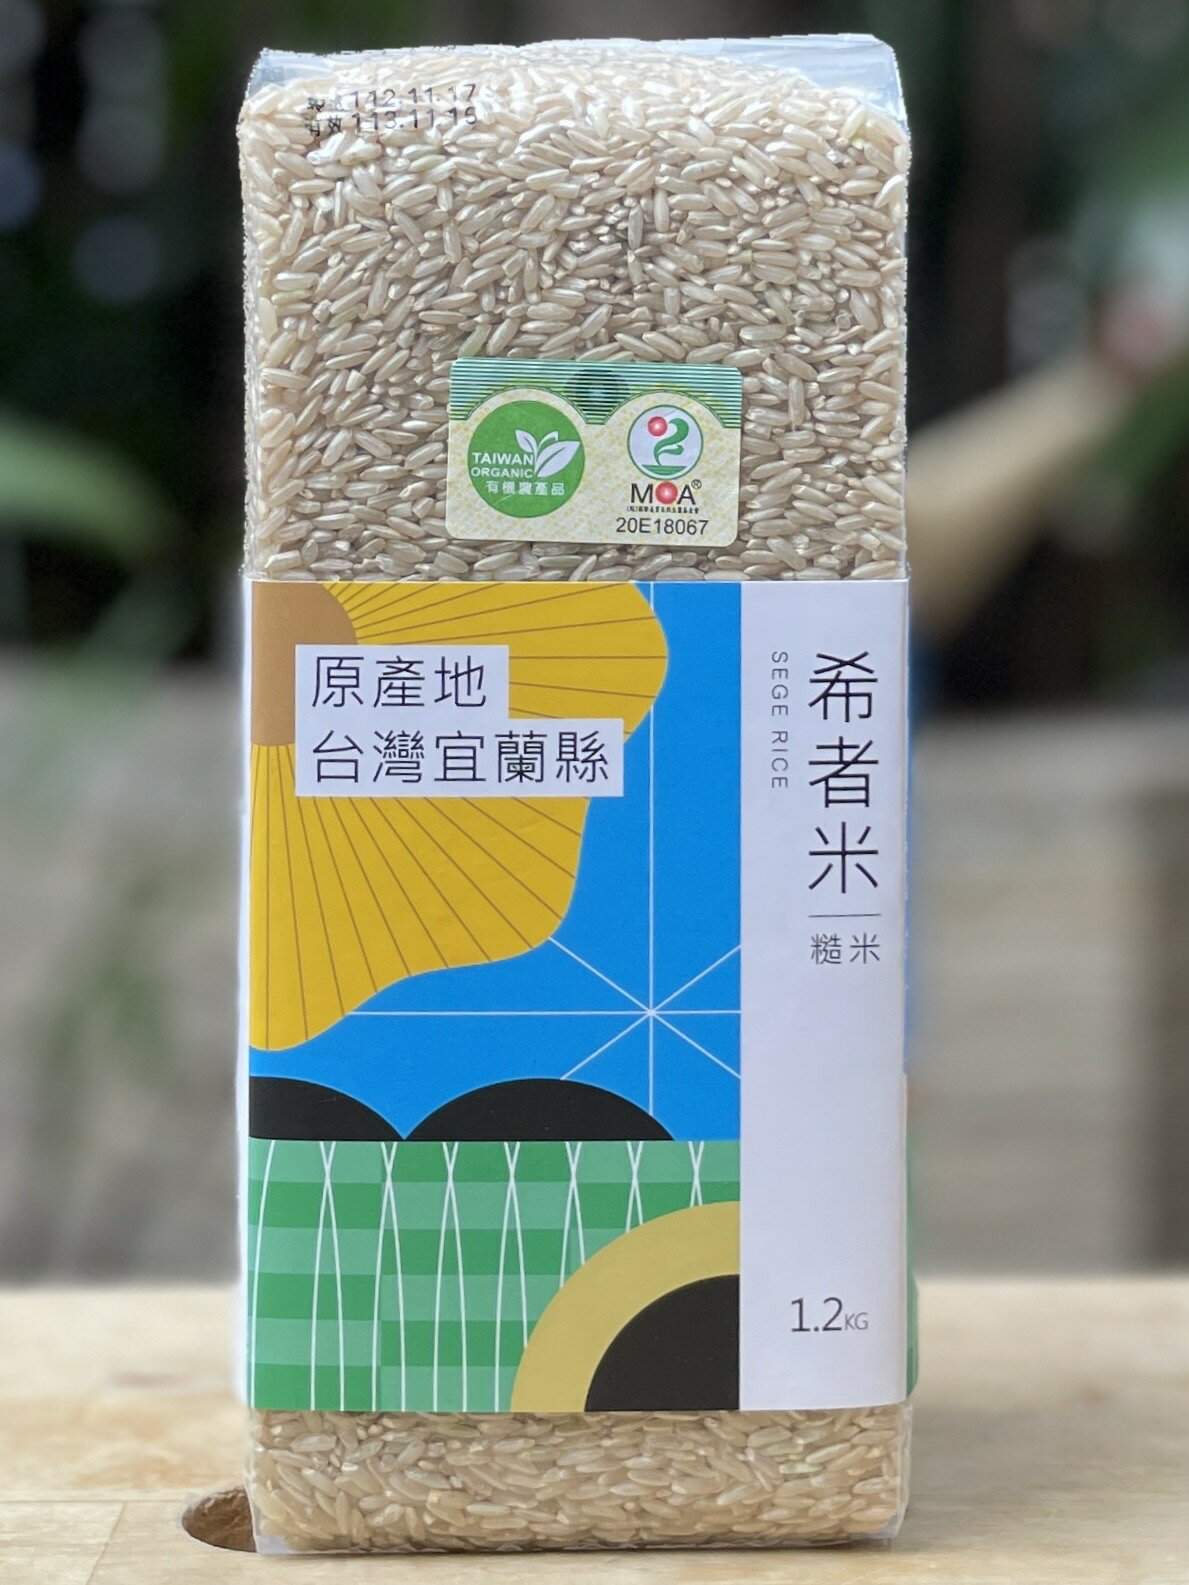 希者米-白米/糙米 (有機硒鍺米) 1.2KG 家庭號8杯米